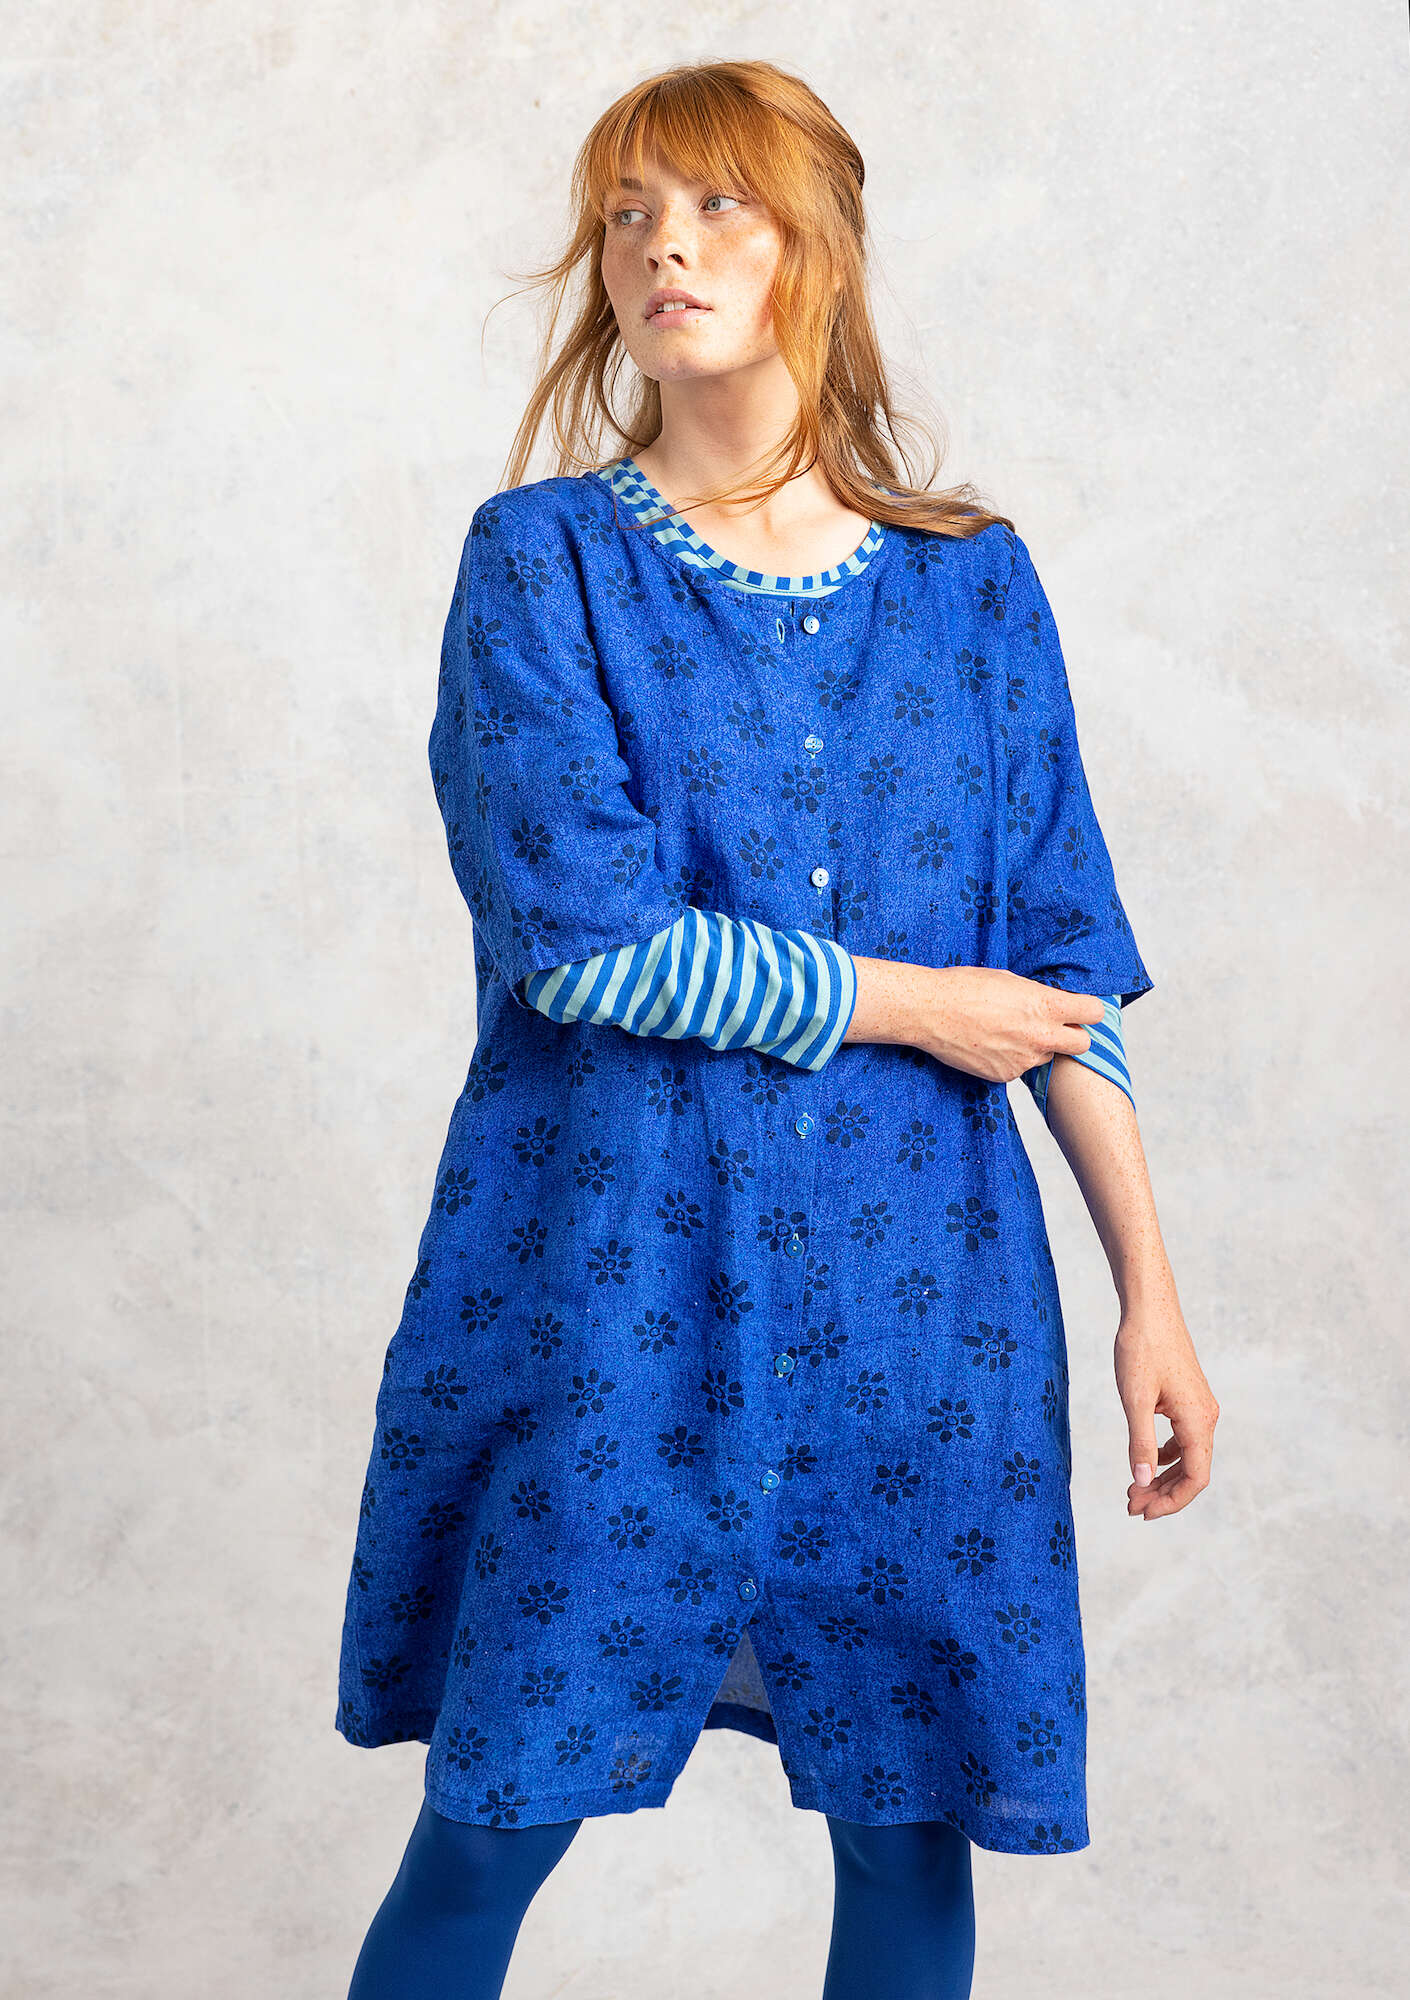 Vevd kjole «Ester» i lin safirblå/mønstret